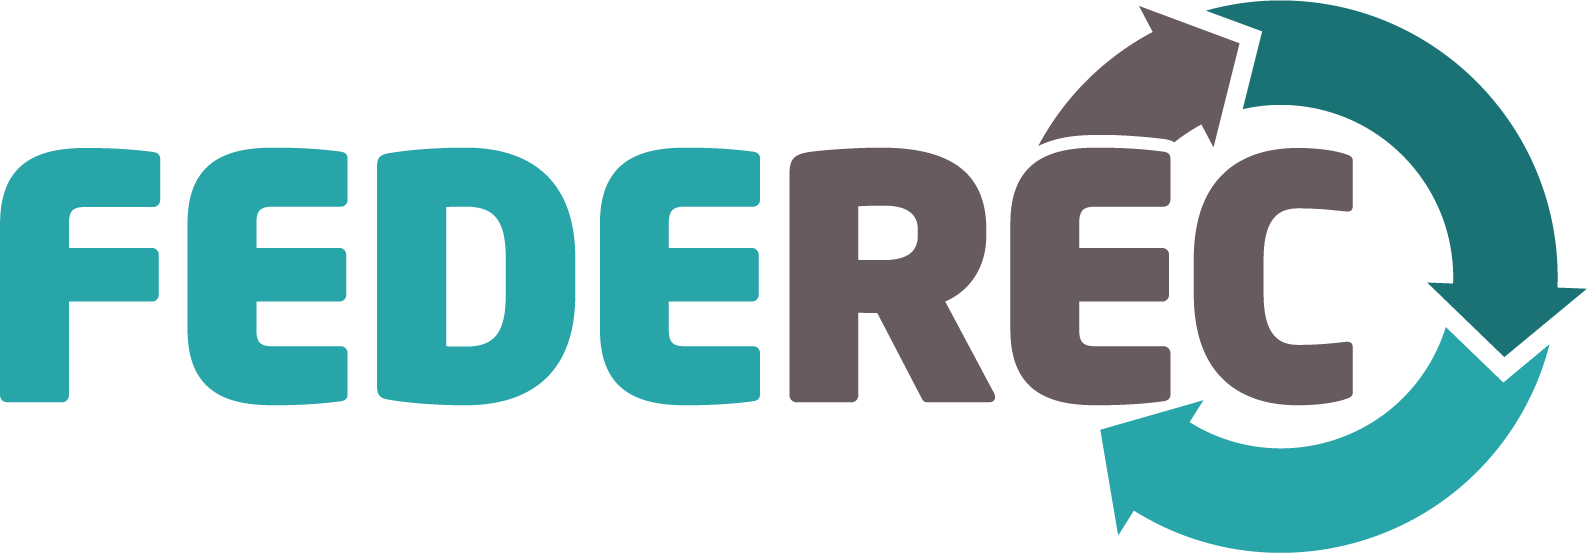 FEREDEC-RS site